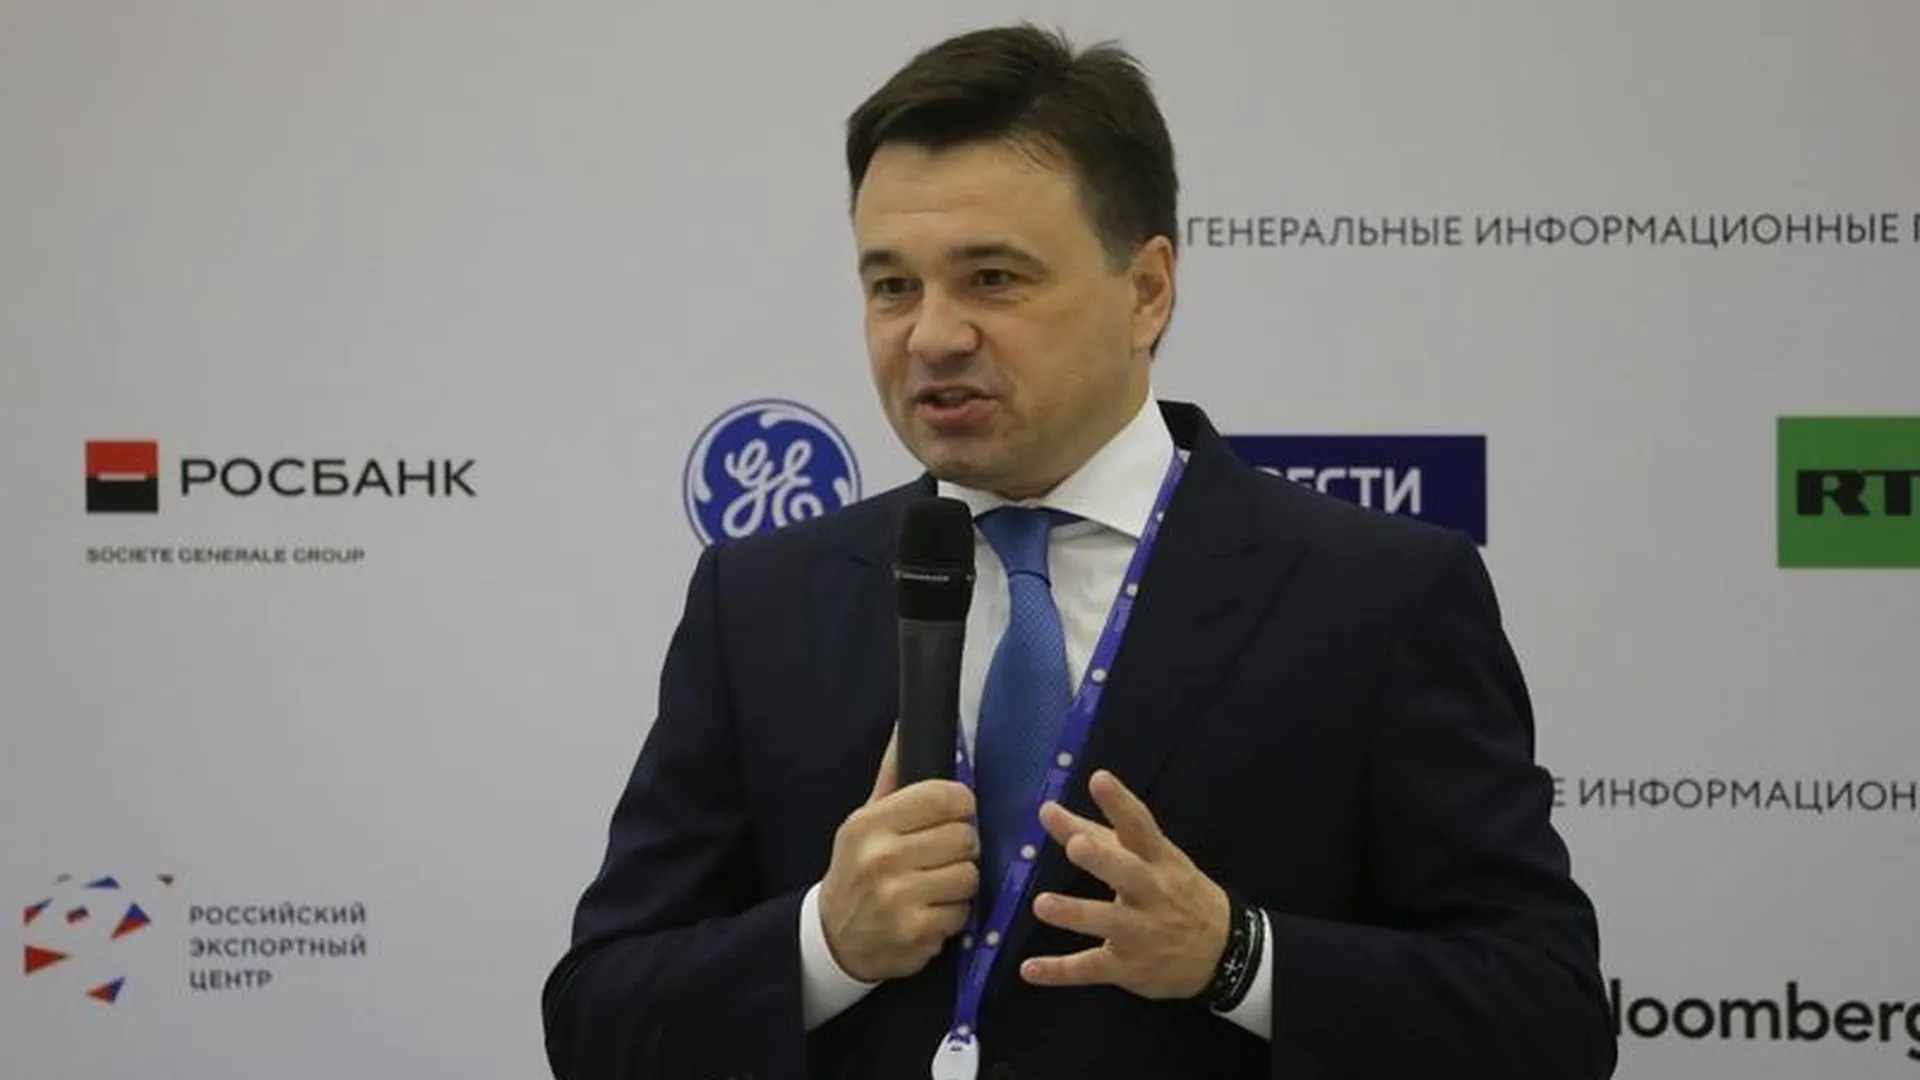 Губернатор: развитие экономики - стратегическая задача Московской области